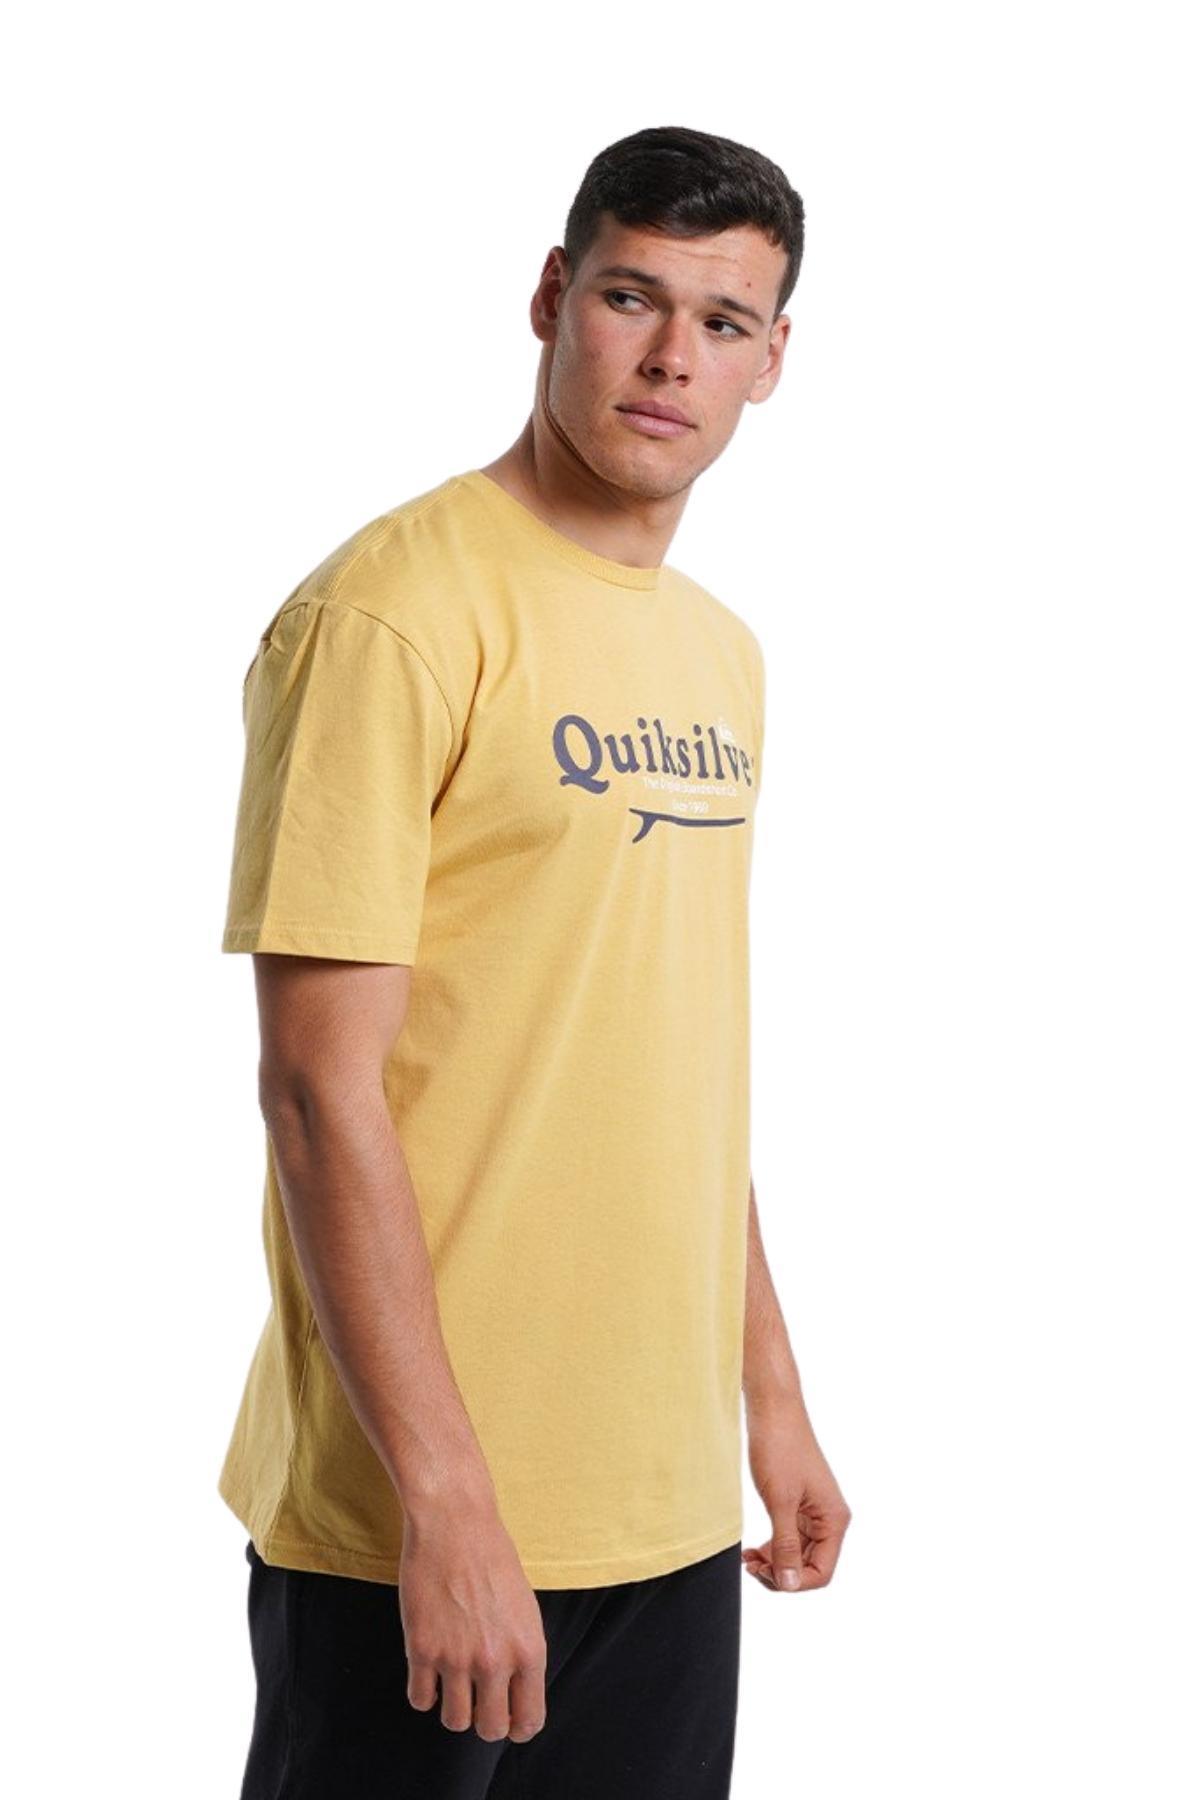 Quiksilver Quiksilver EQYZT06711 - Silver Lining Ss Erkek T-Shirt IR9555